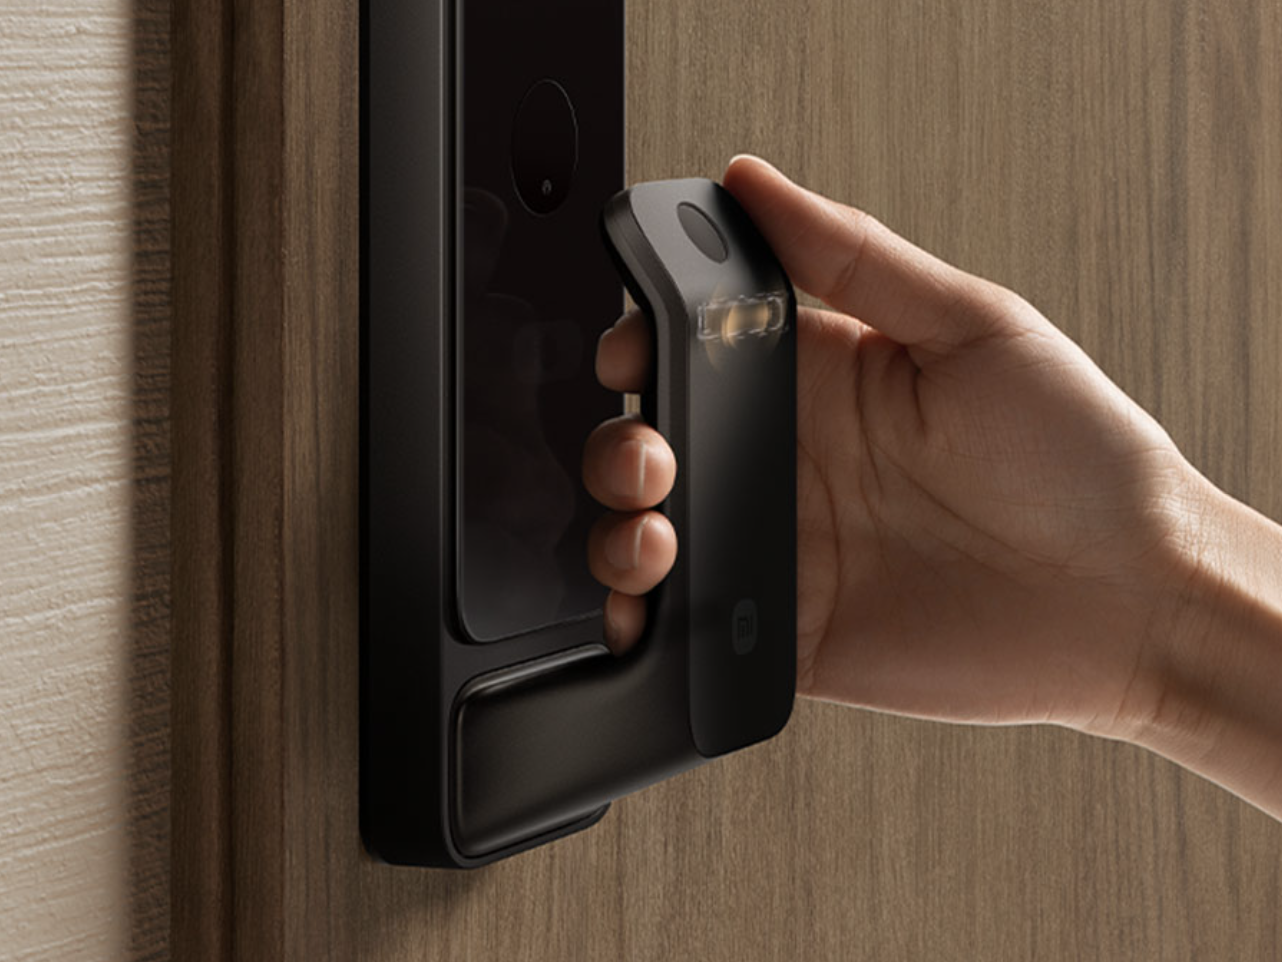 New Xiaomi Sensible Door Lock 2 Finger Vein Model launches